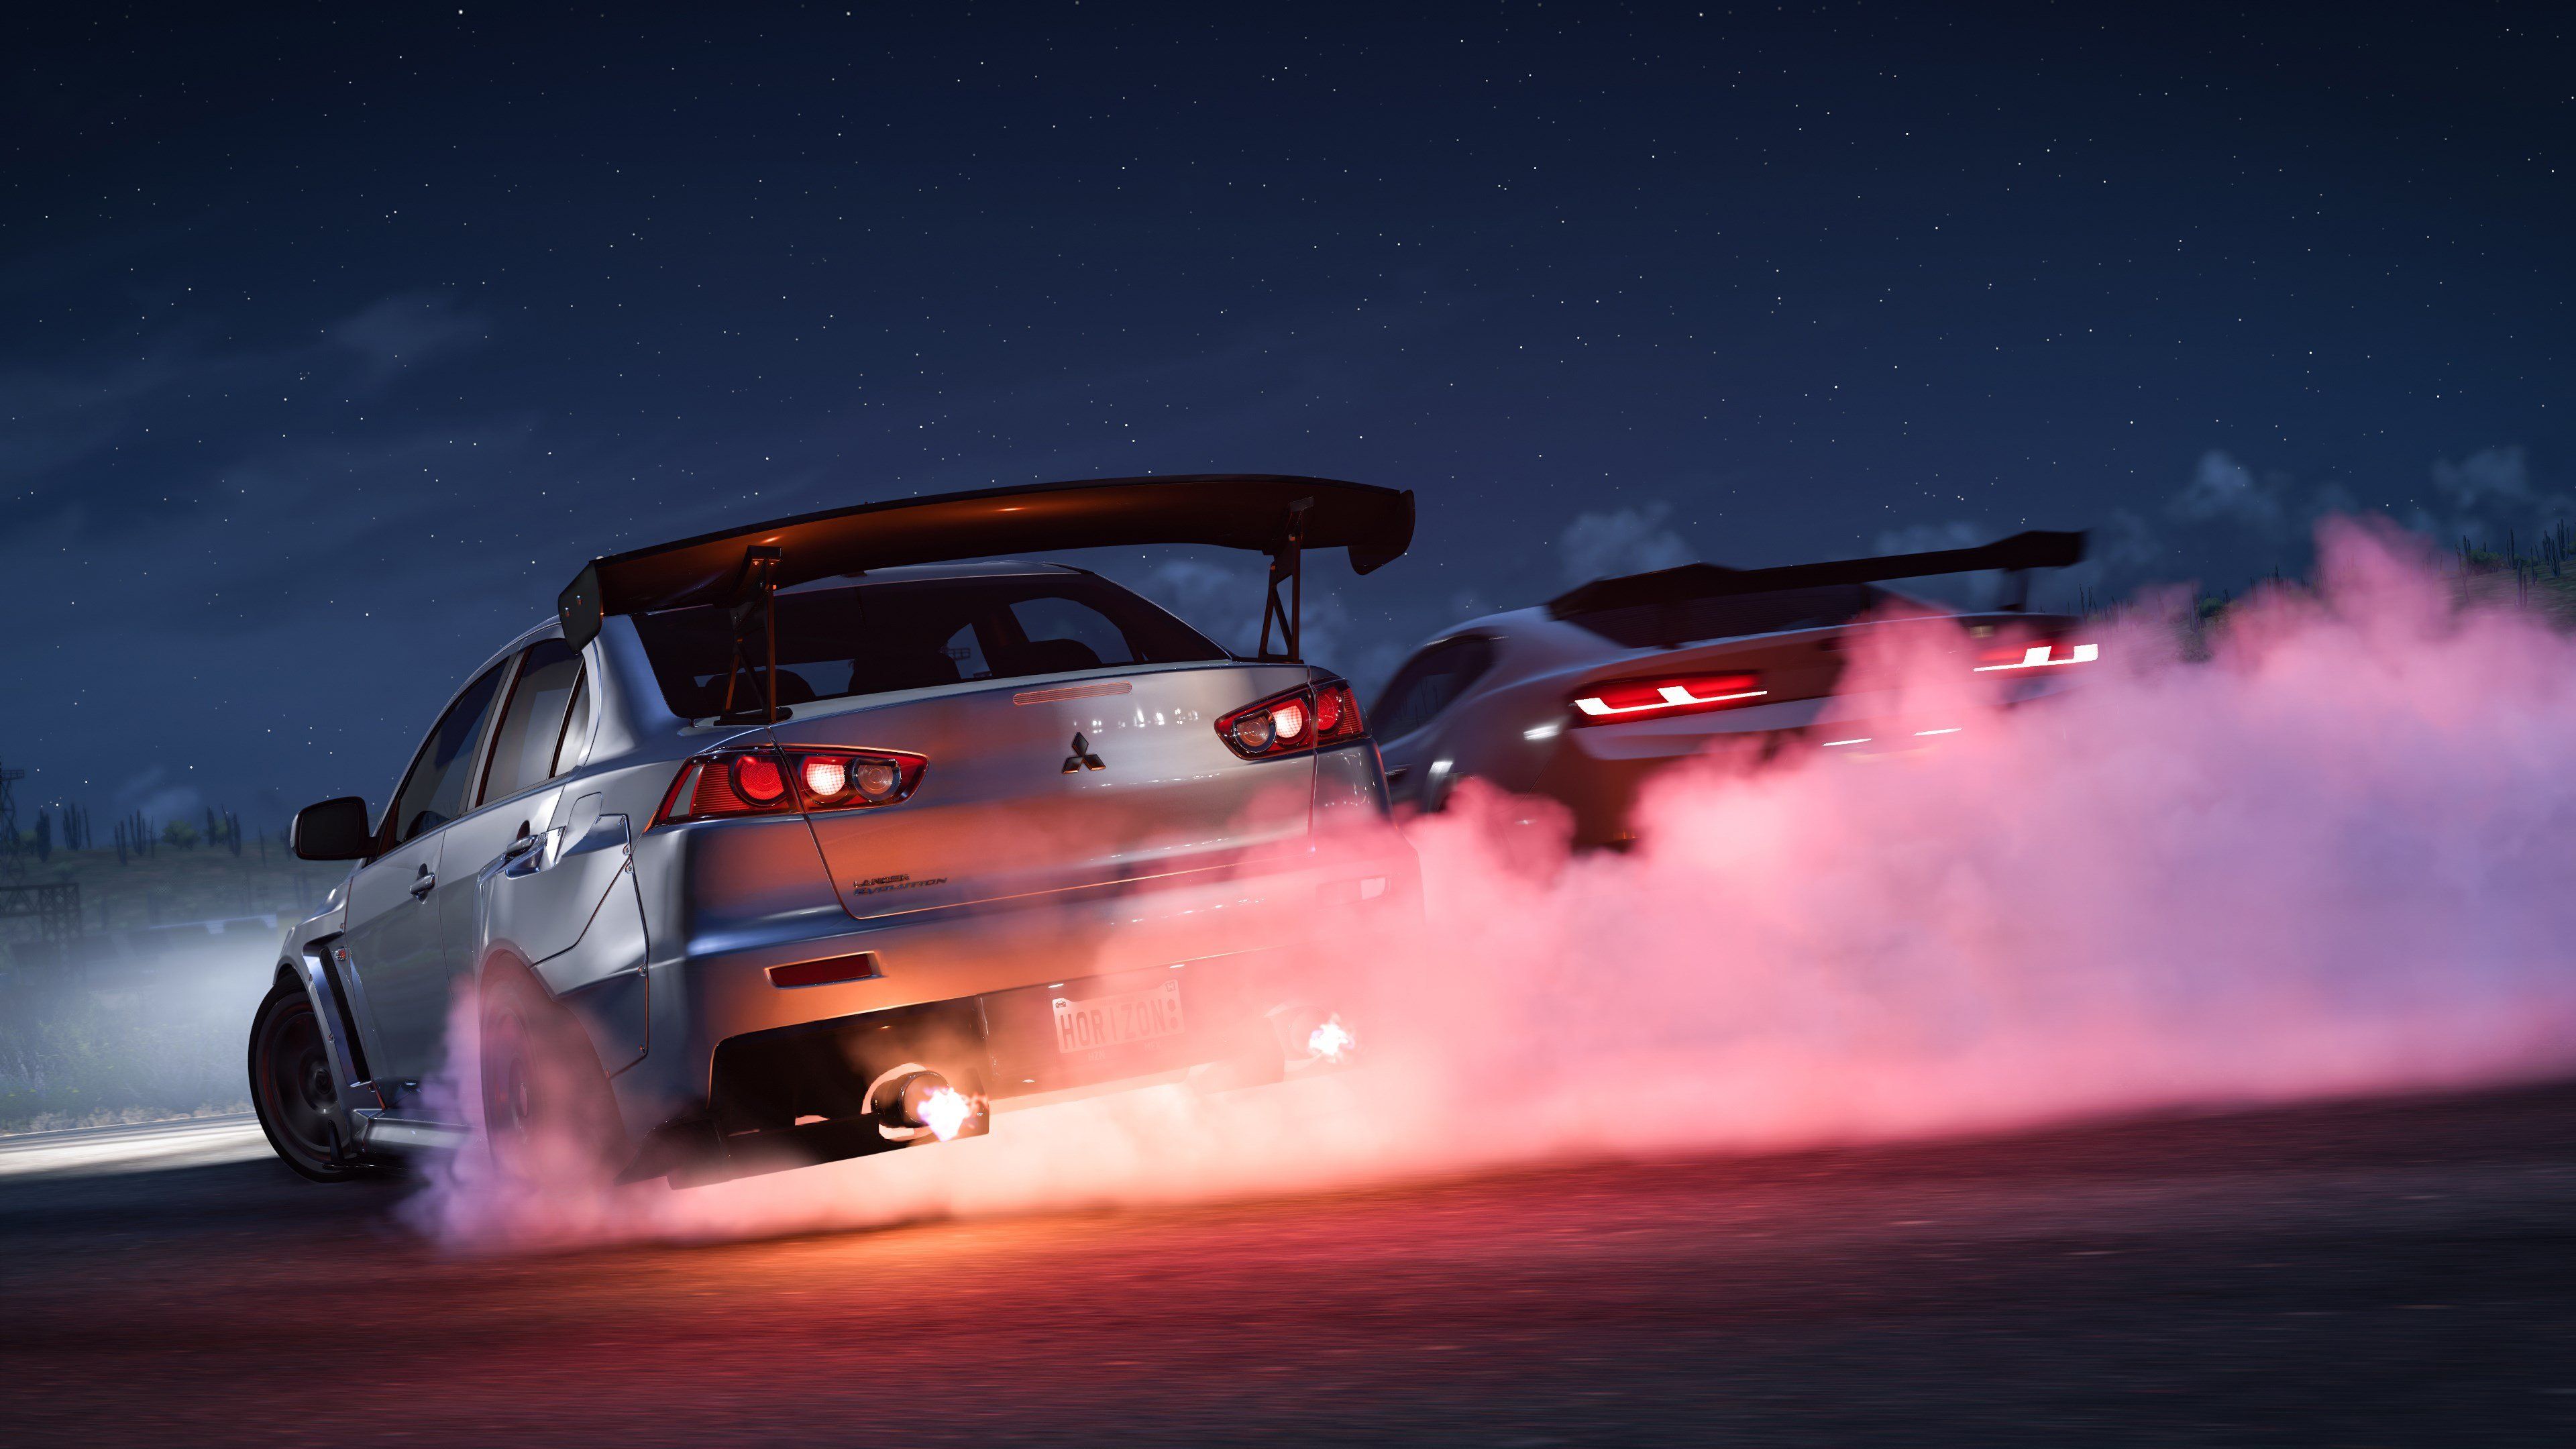 Forza Horizon 5: requisitos recomendados de PC são revelados